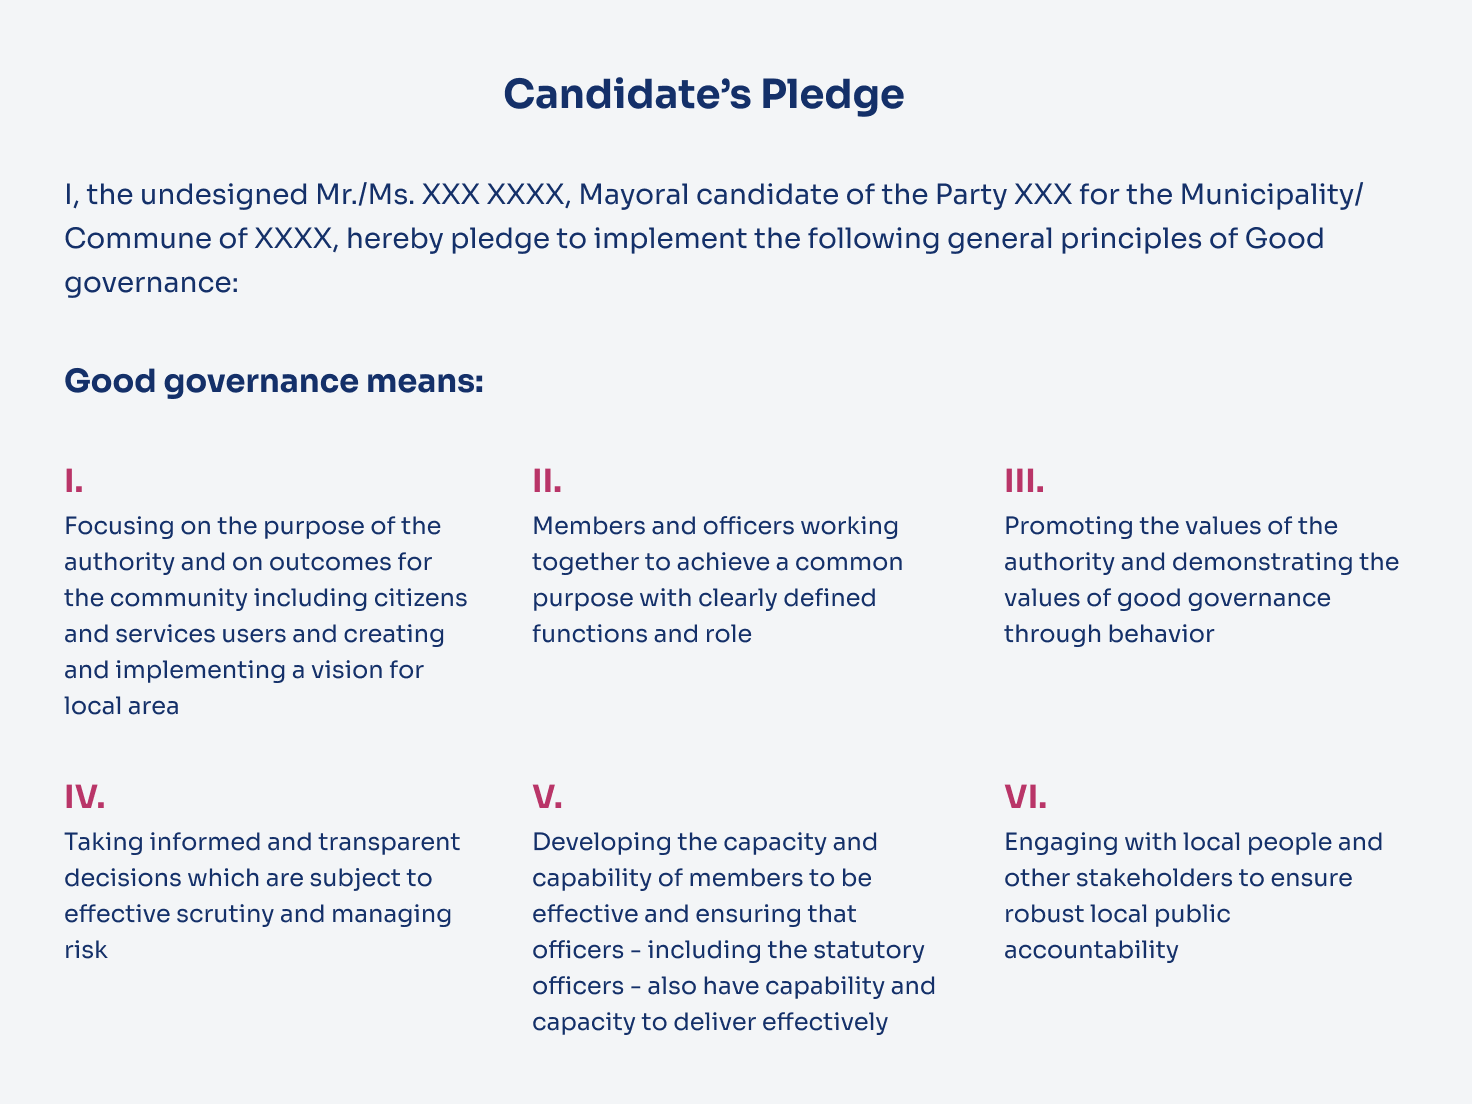 Candidates Pledge Image